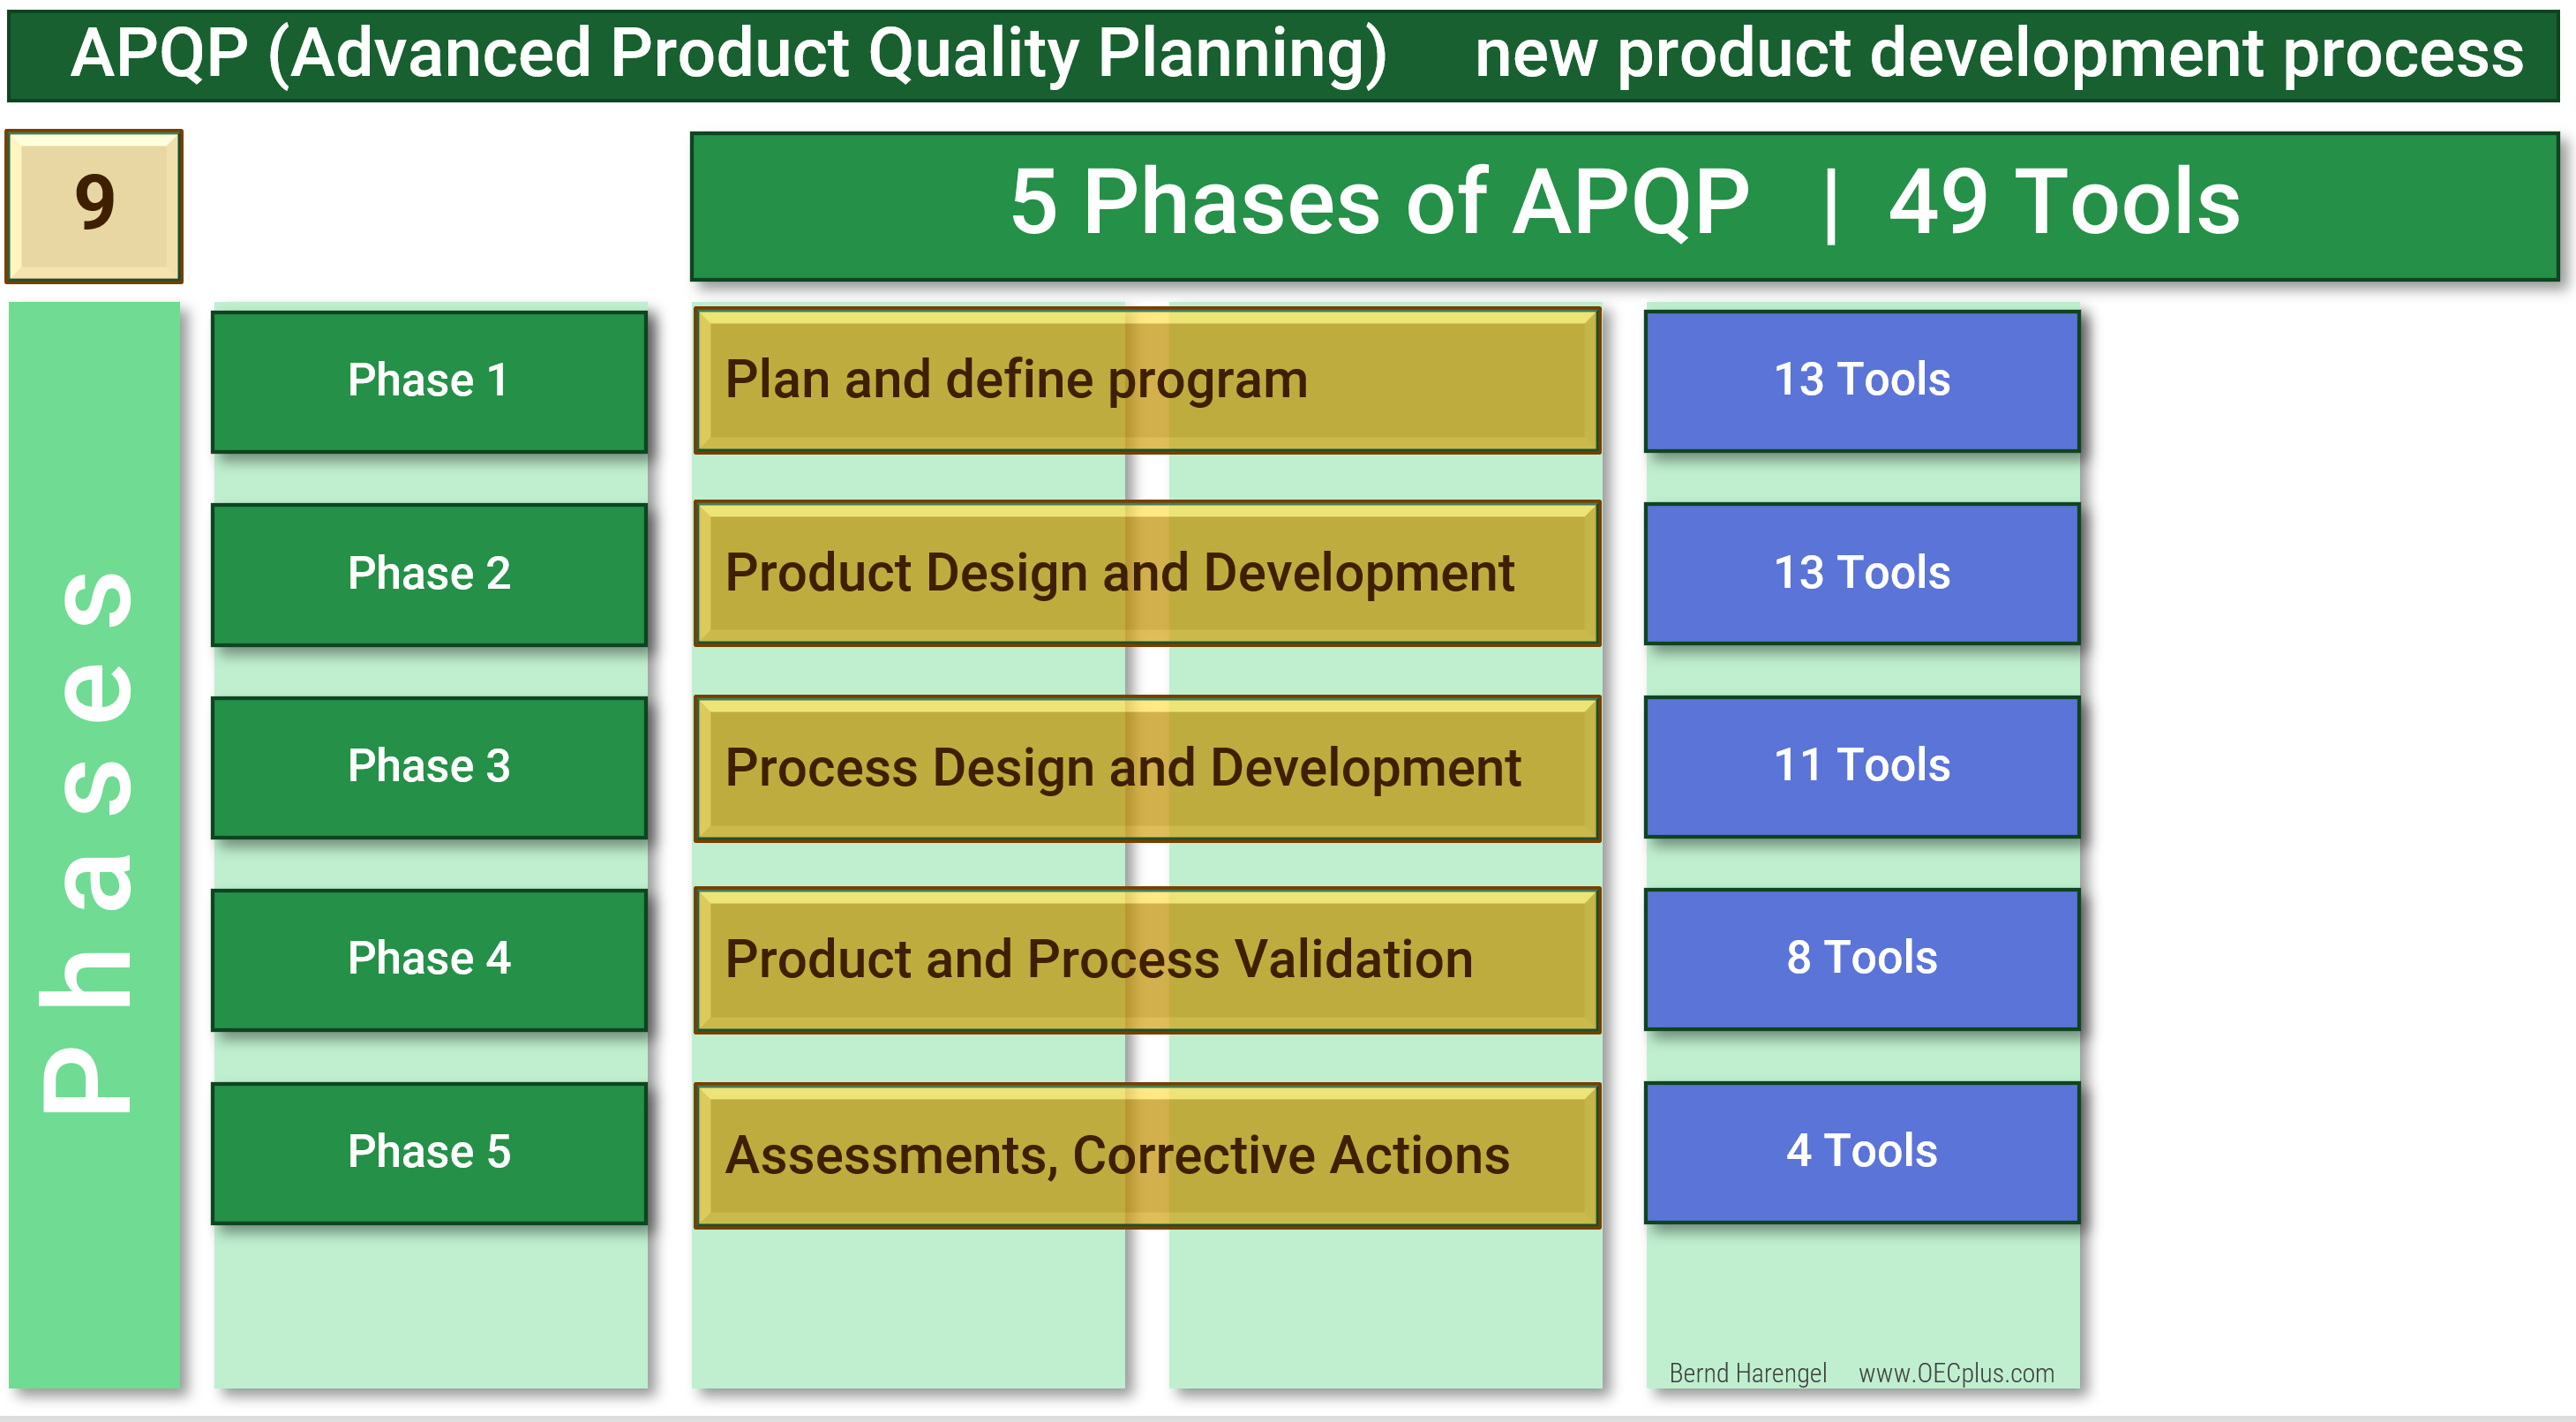 APQP: Von der Produktentwicklung zur Spitzenleistung - OECplus